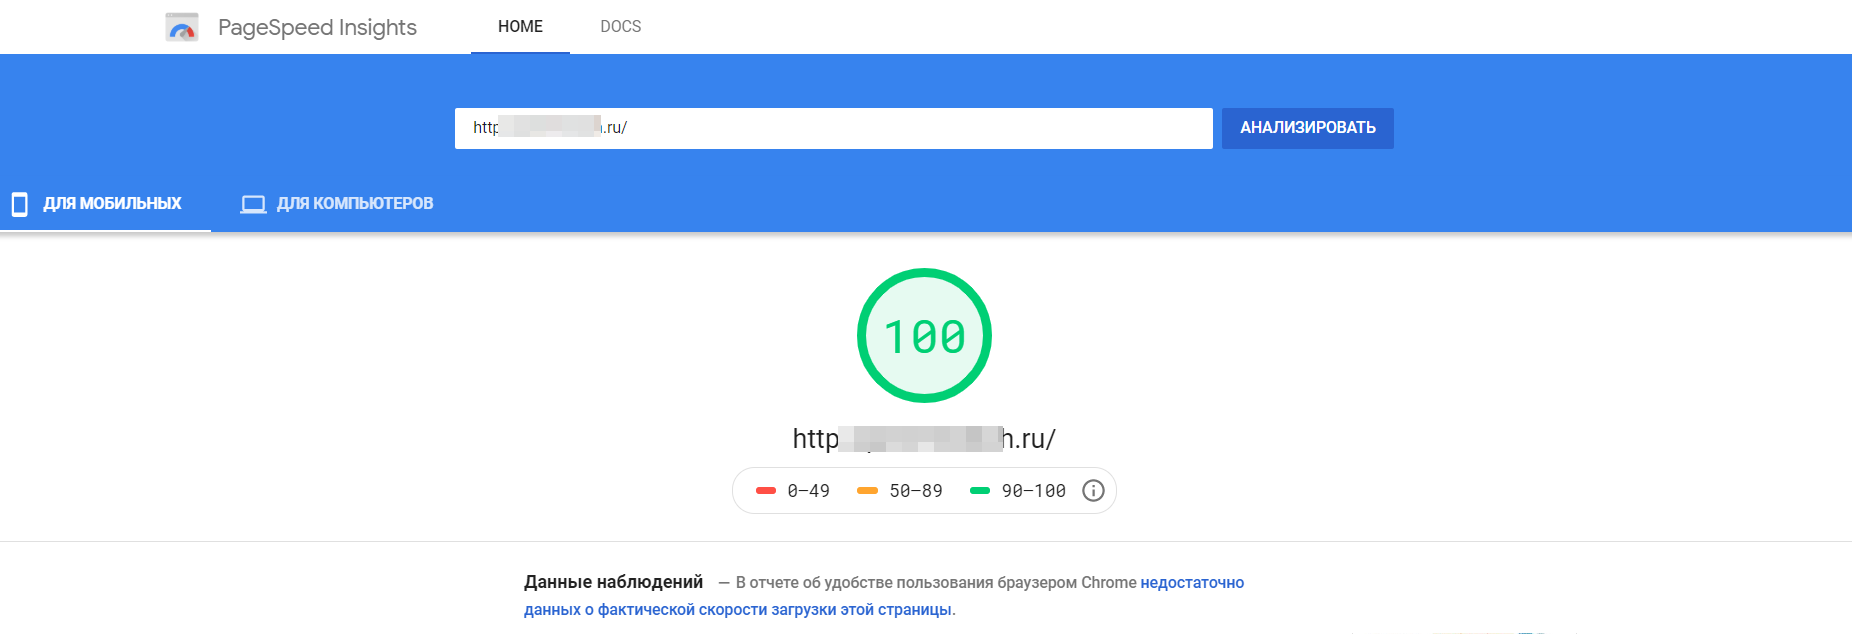 Результат тестирования сайта клиента инструментом Google PageSpeed Insights после оптимизации. Идеальный результат, полученный специалистами компании ИНИТЛАБ.